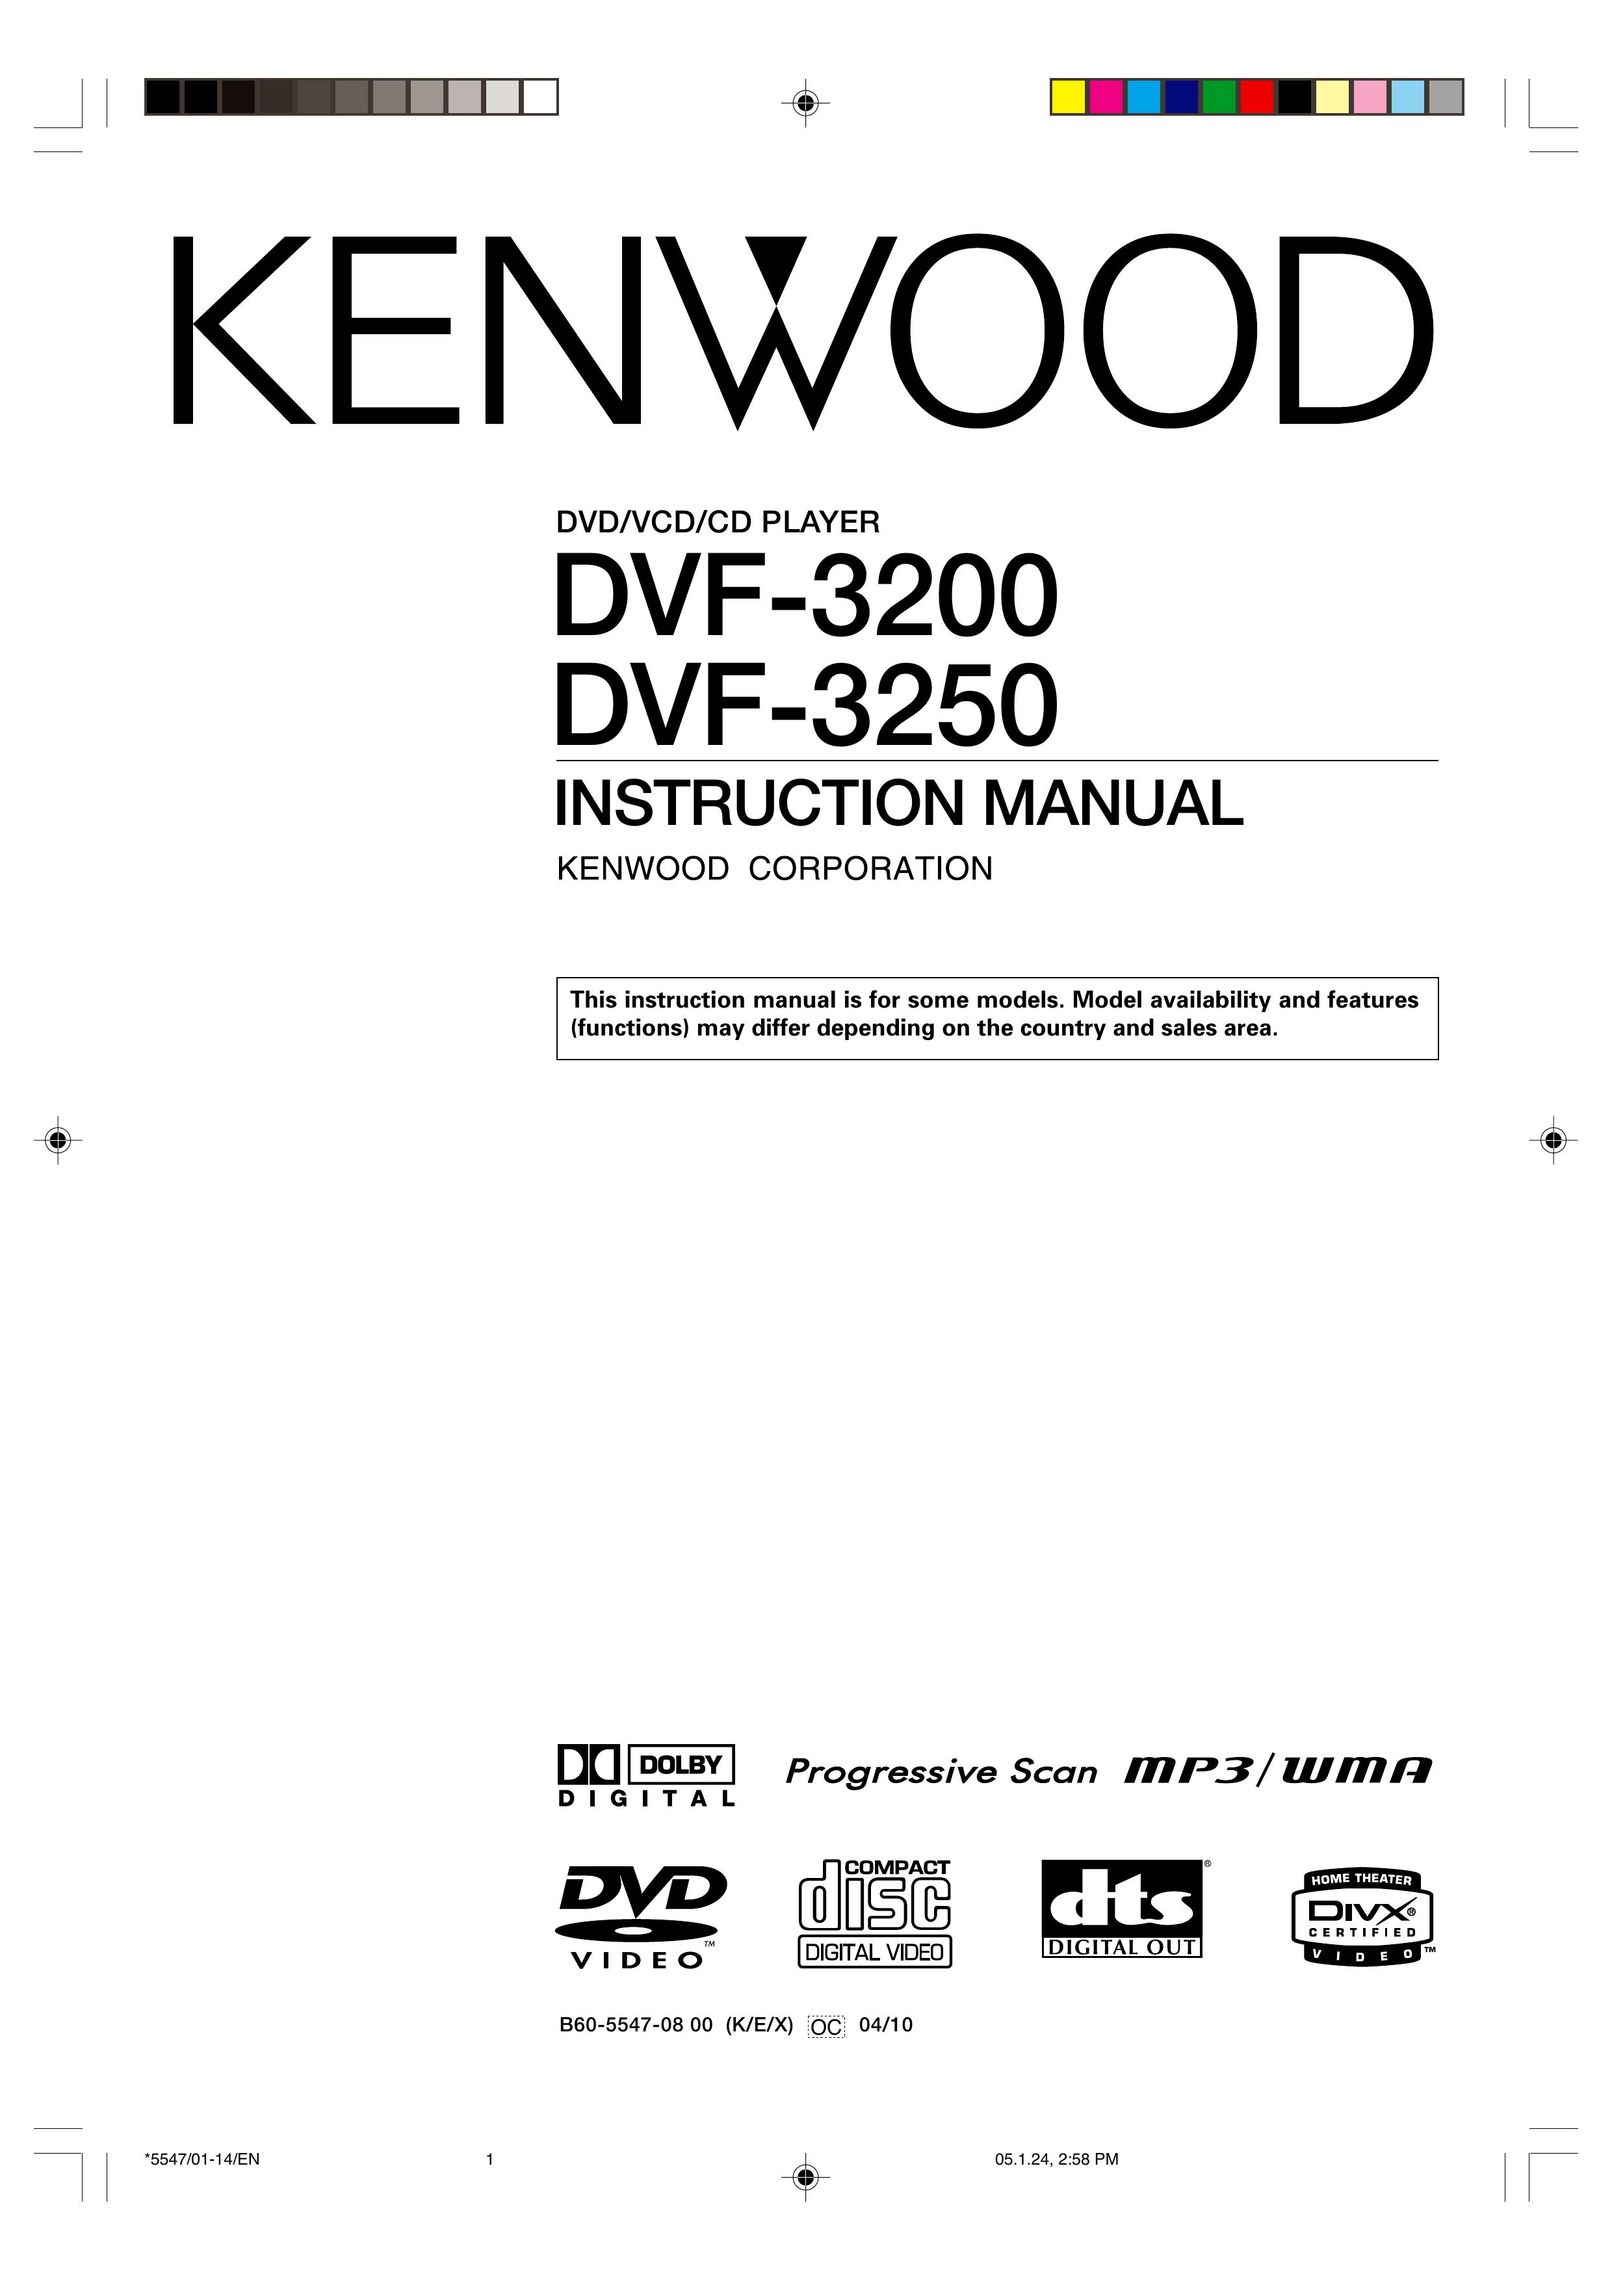 Kenwood DVF-3200 DVD Player User Manual